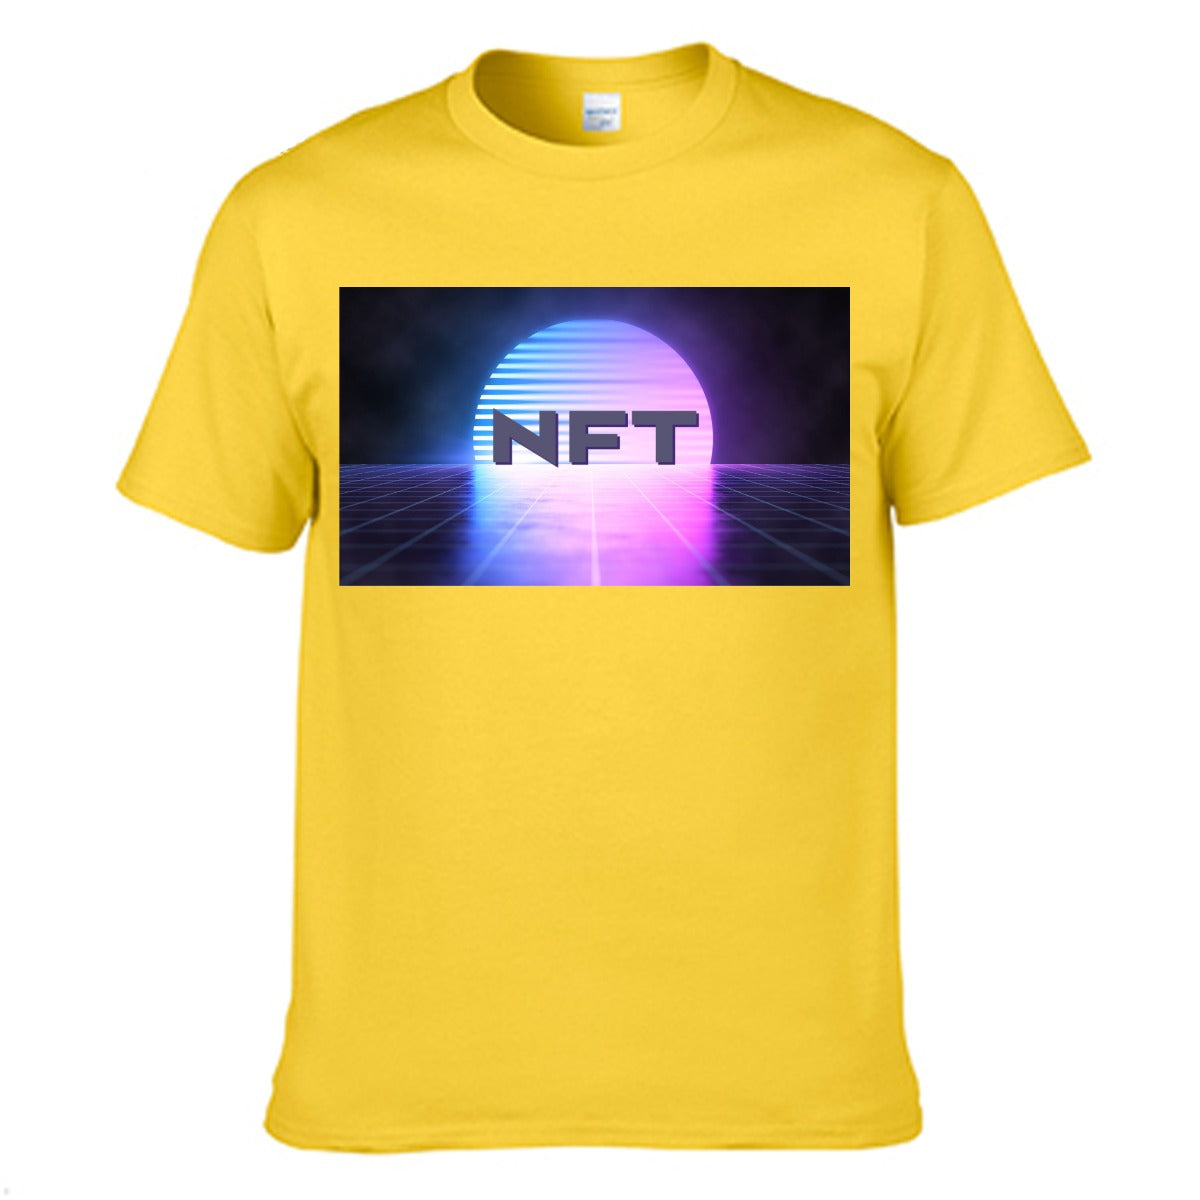 NFT Outfits - NFT Vaporwave Cotton T-Shirt